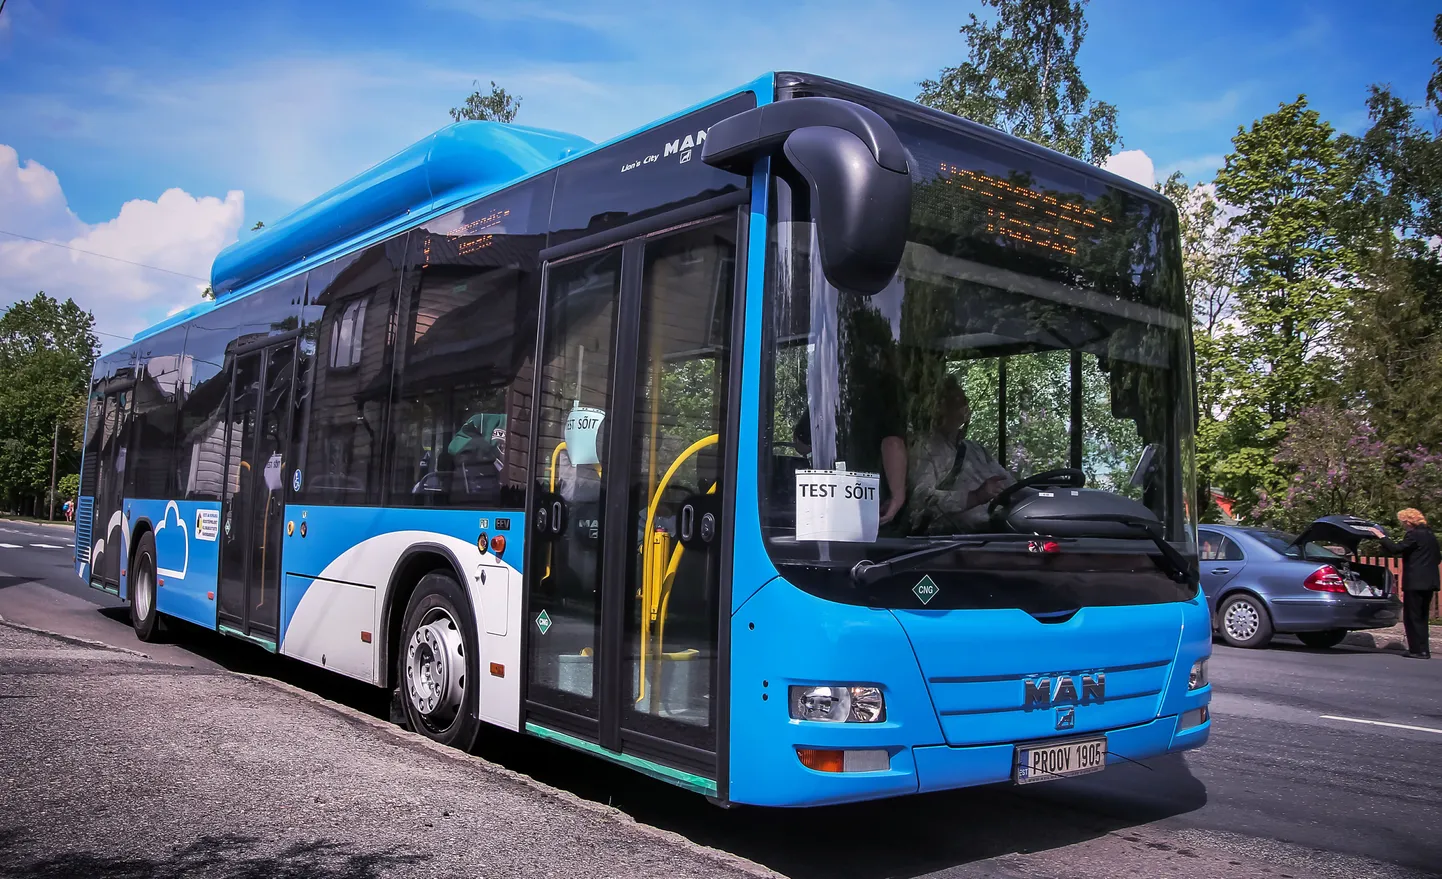 Pärnumaa ühistranspordikeskus kuulutab suveks välja ideekonkursi tuleval aastal Pärnus ringi vuravate linnabusside disainimiseks. Foto on illustreeriv.